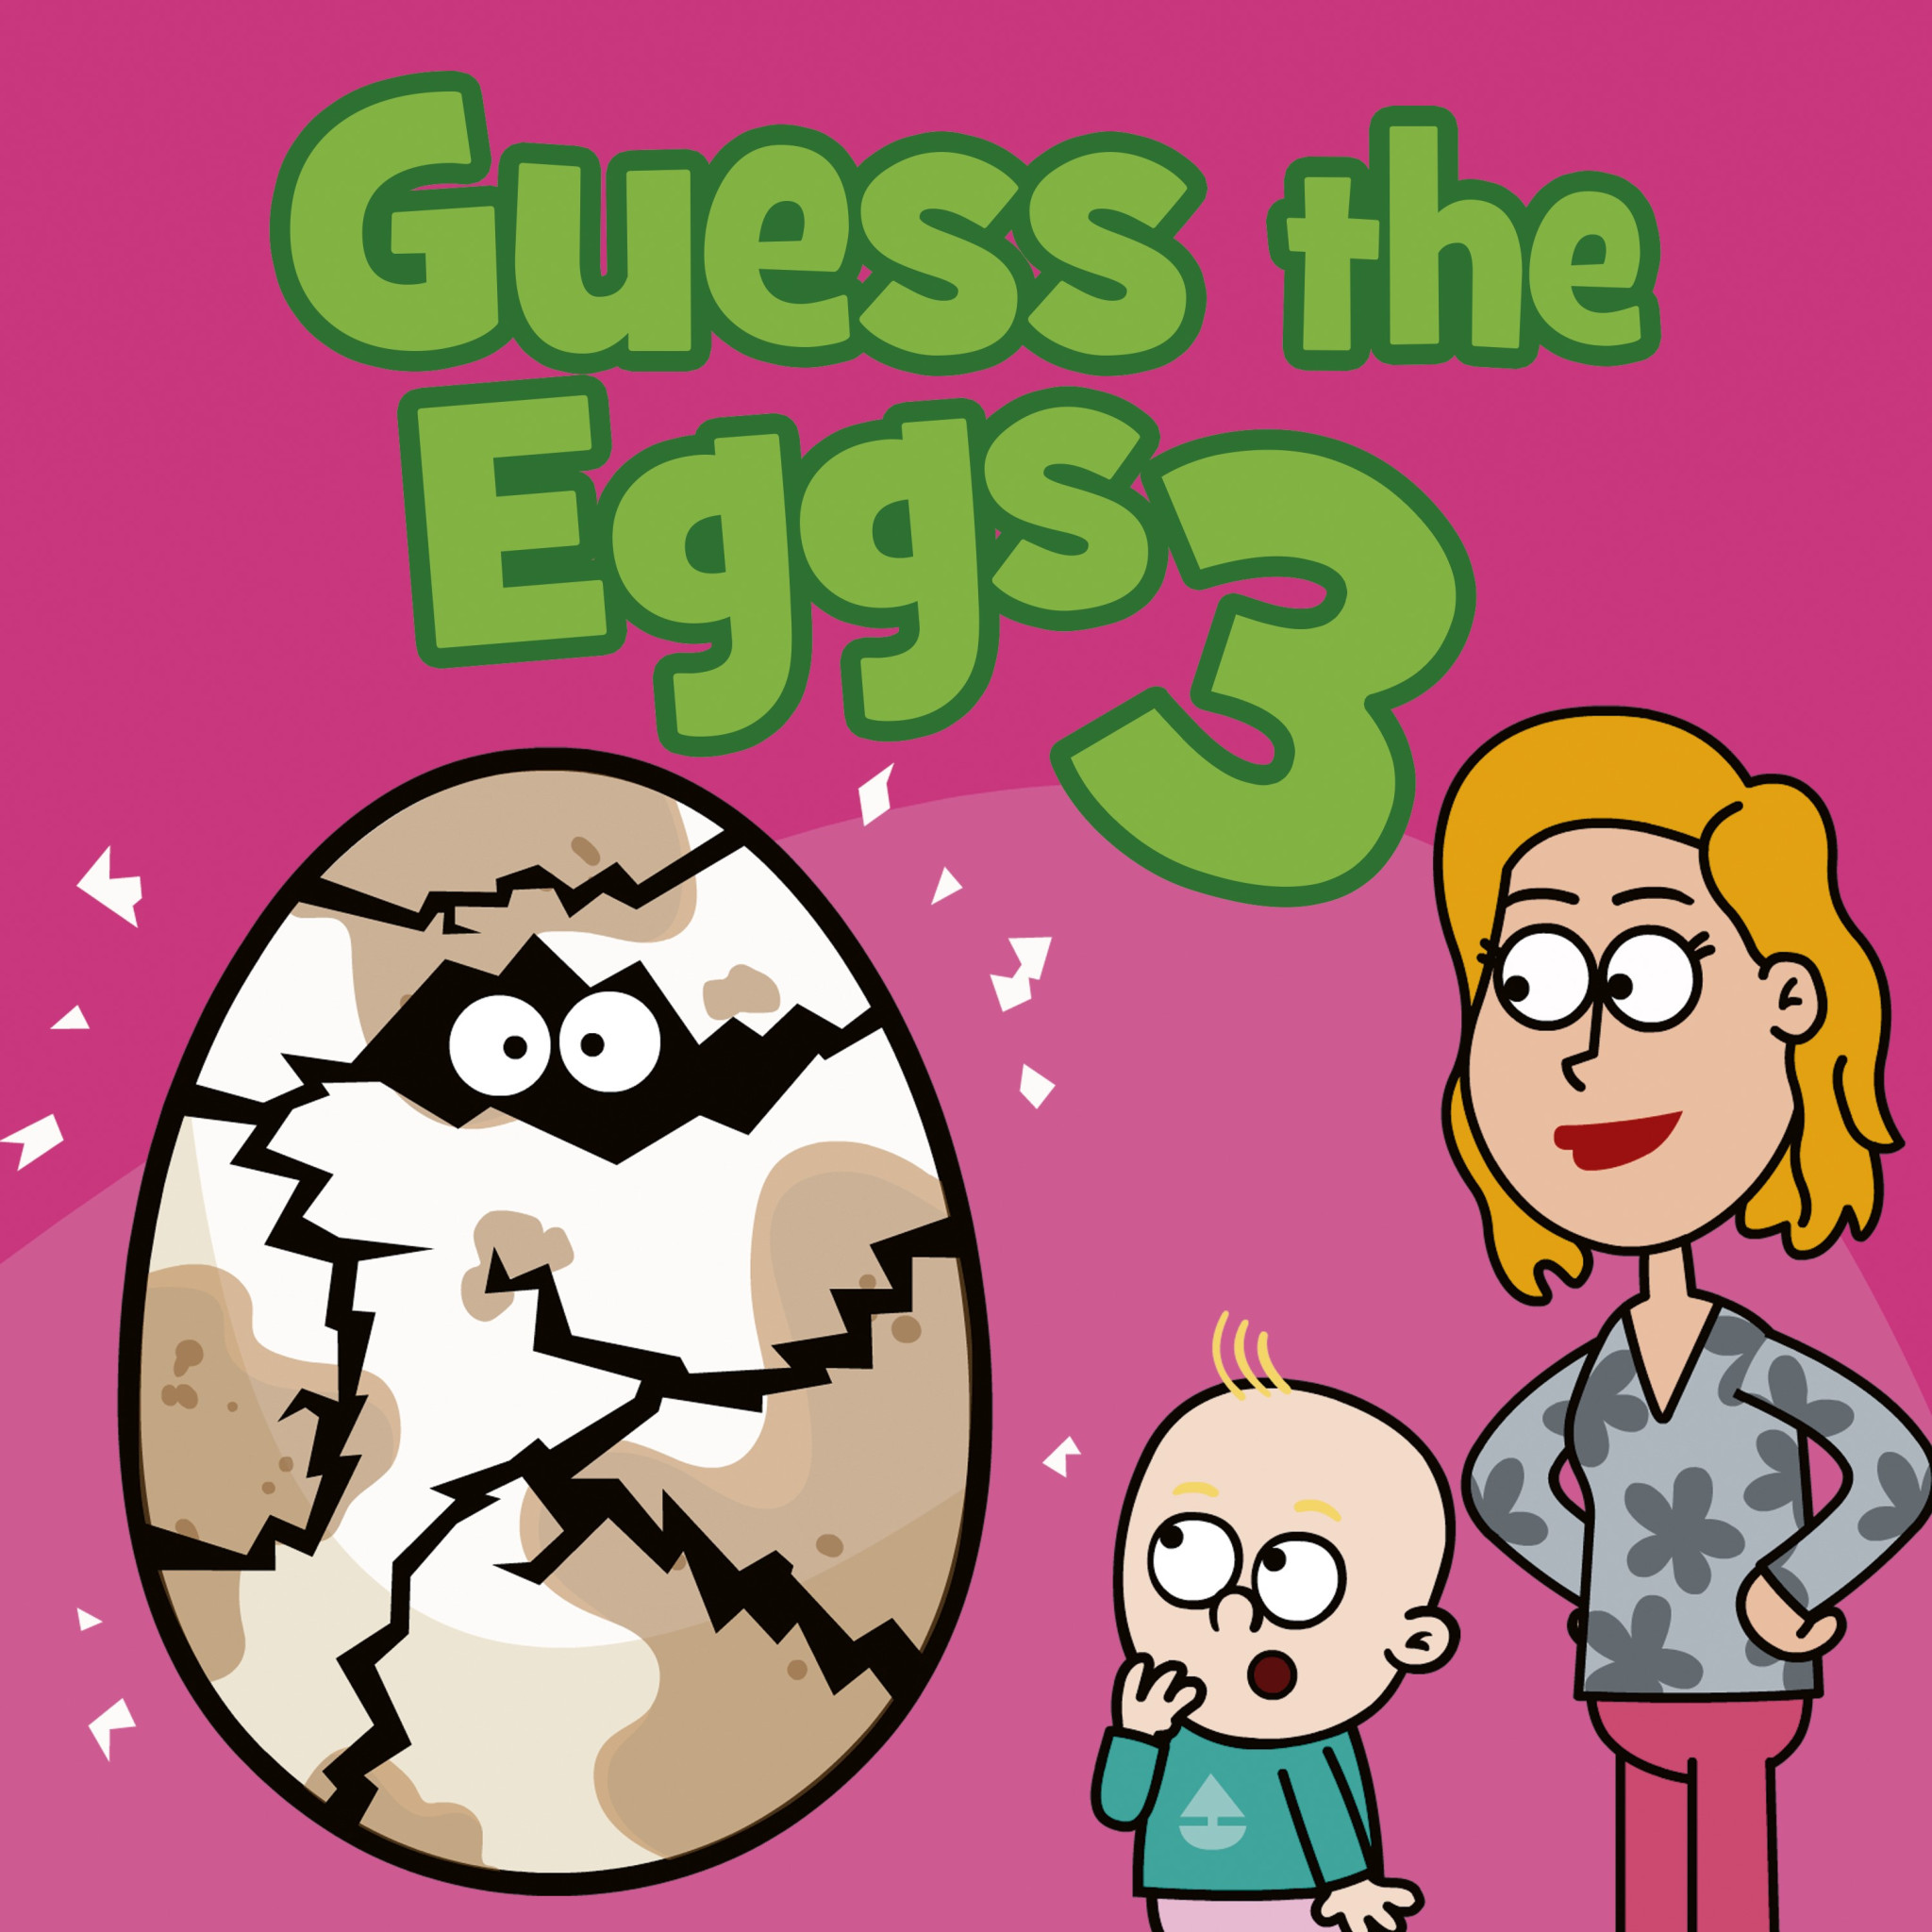 Guess_the_Eggs_3_eSingle-COVER_3k_sRGB_LZW (1).jpeg